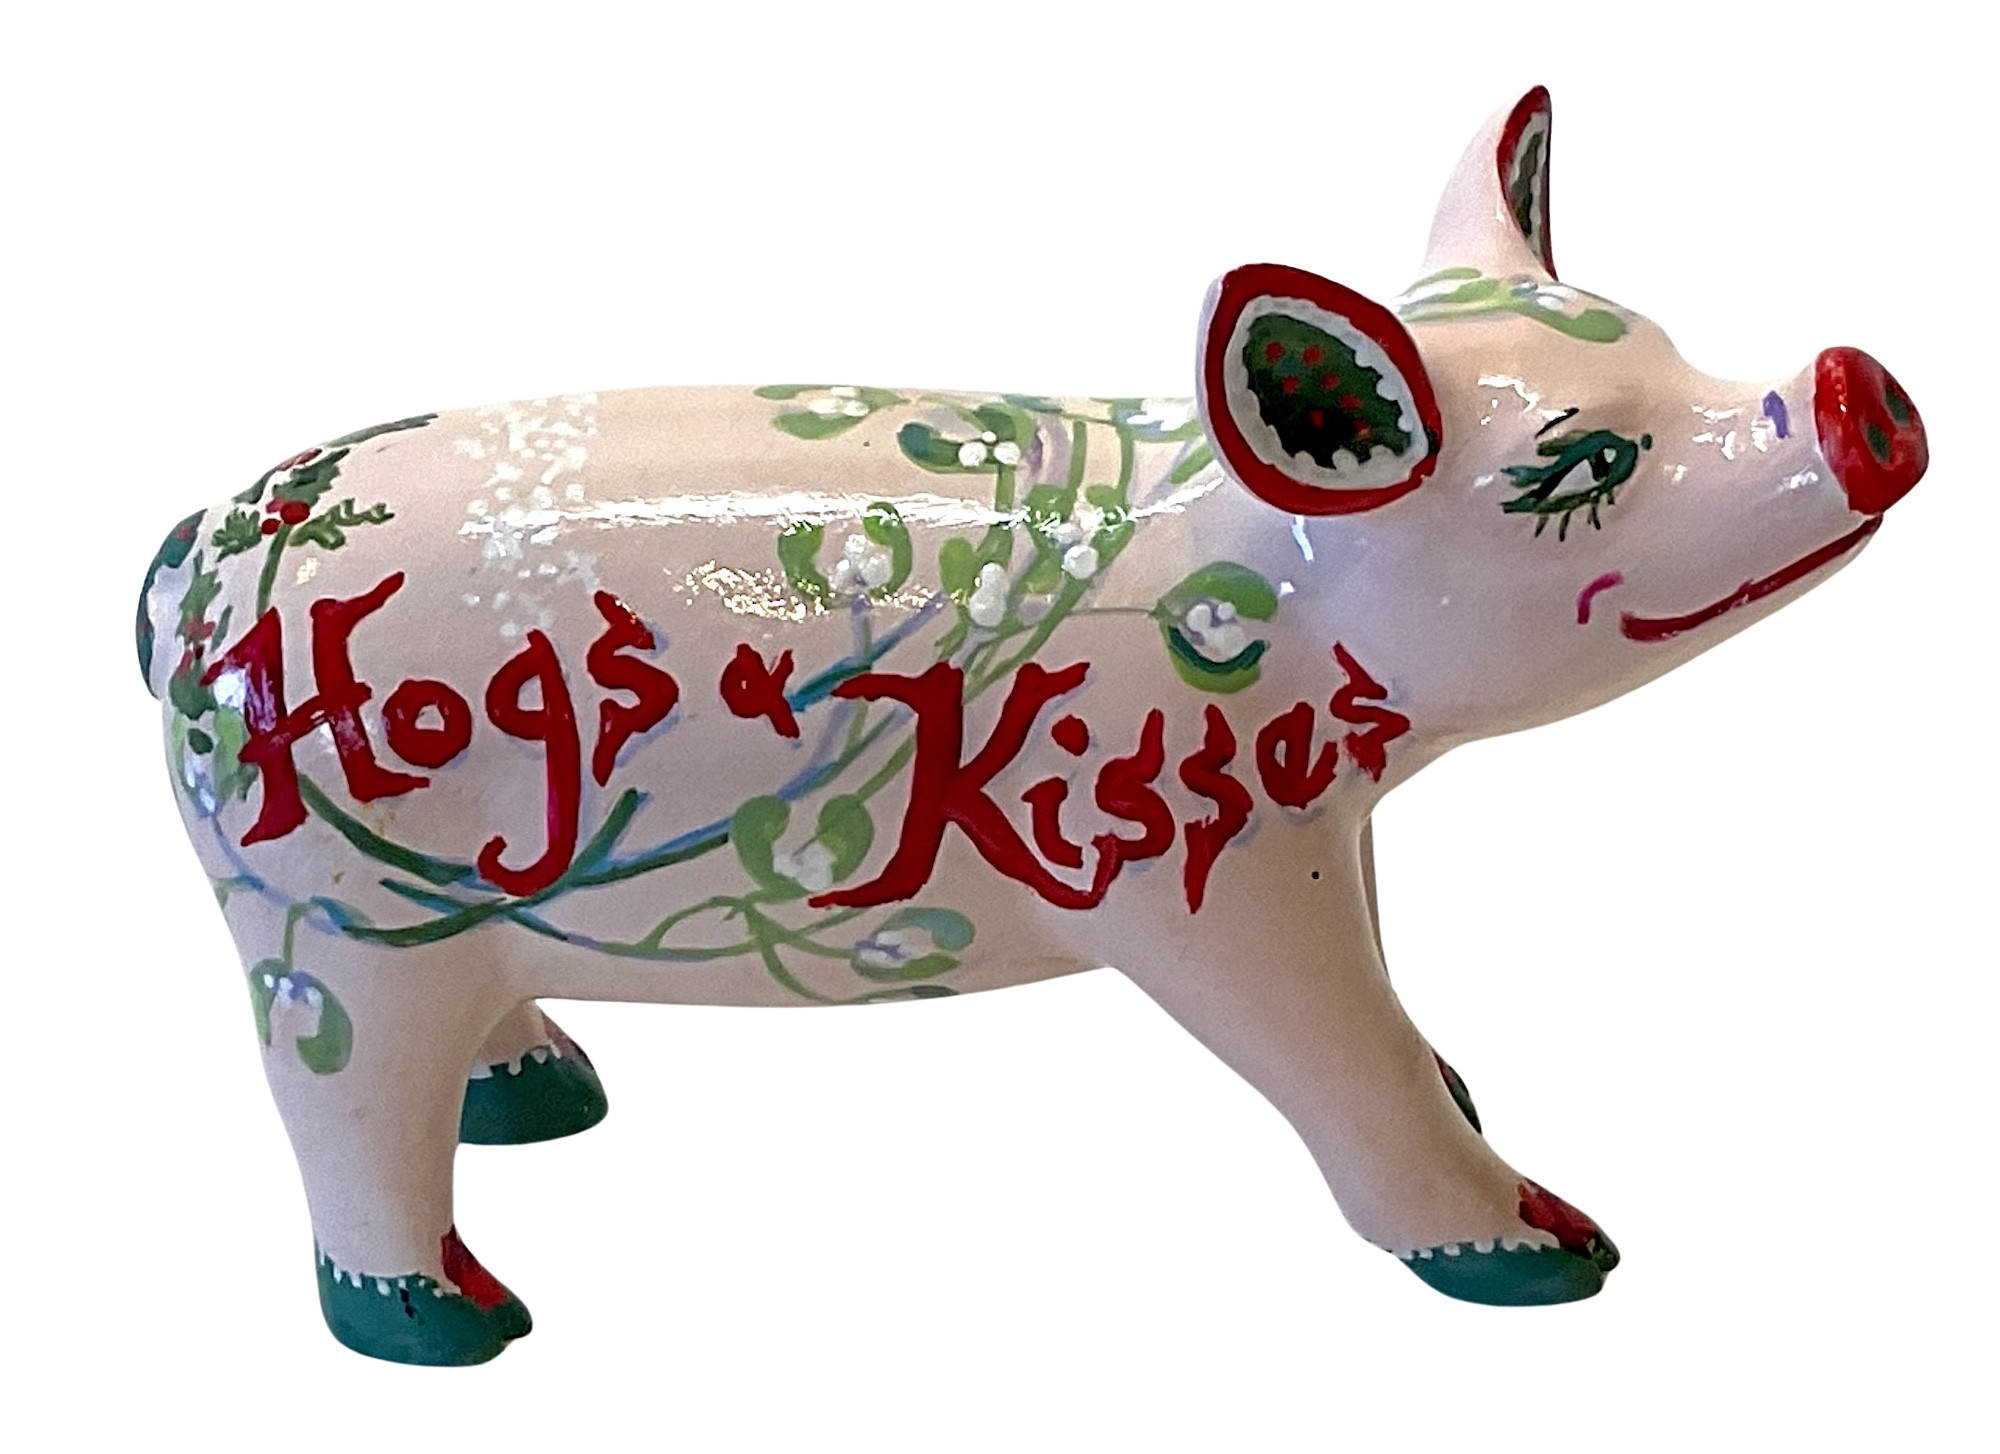 PP-D1499 Hoggs & Kisses Mini pig